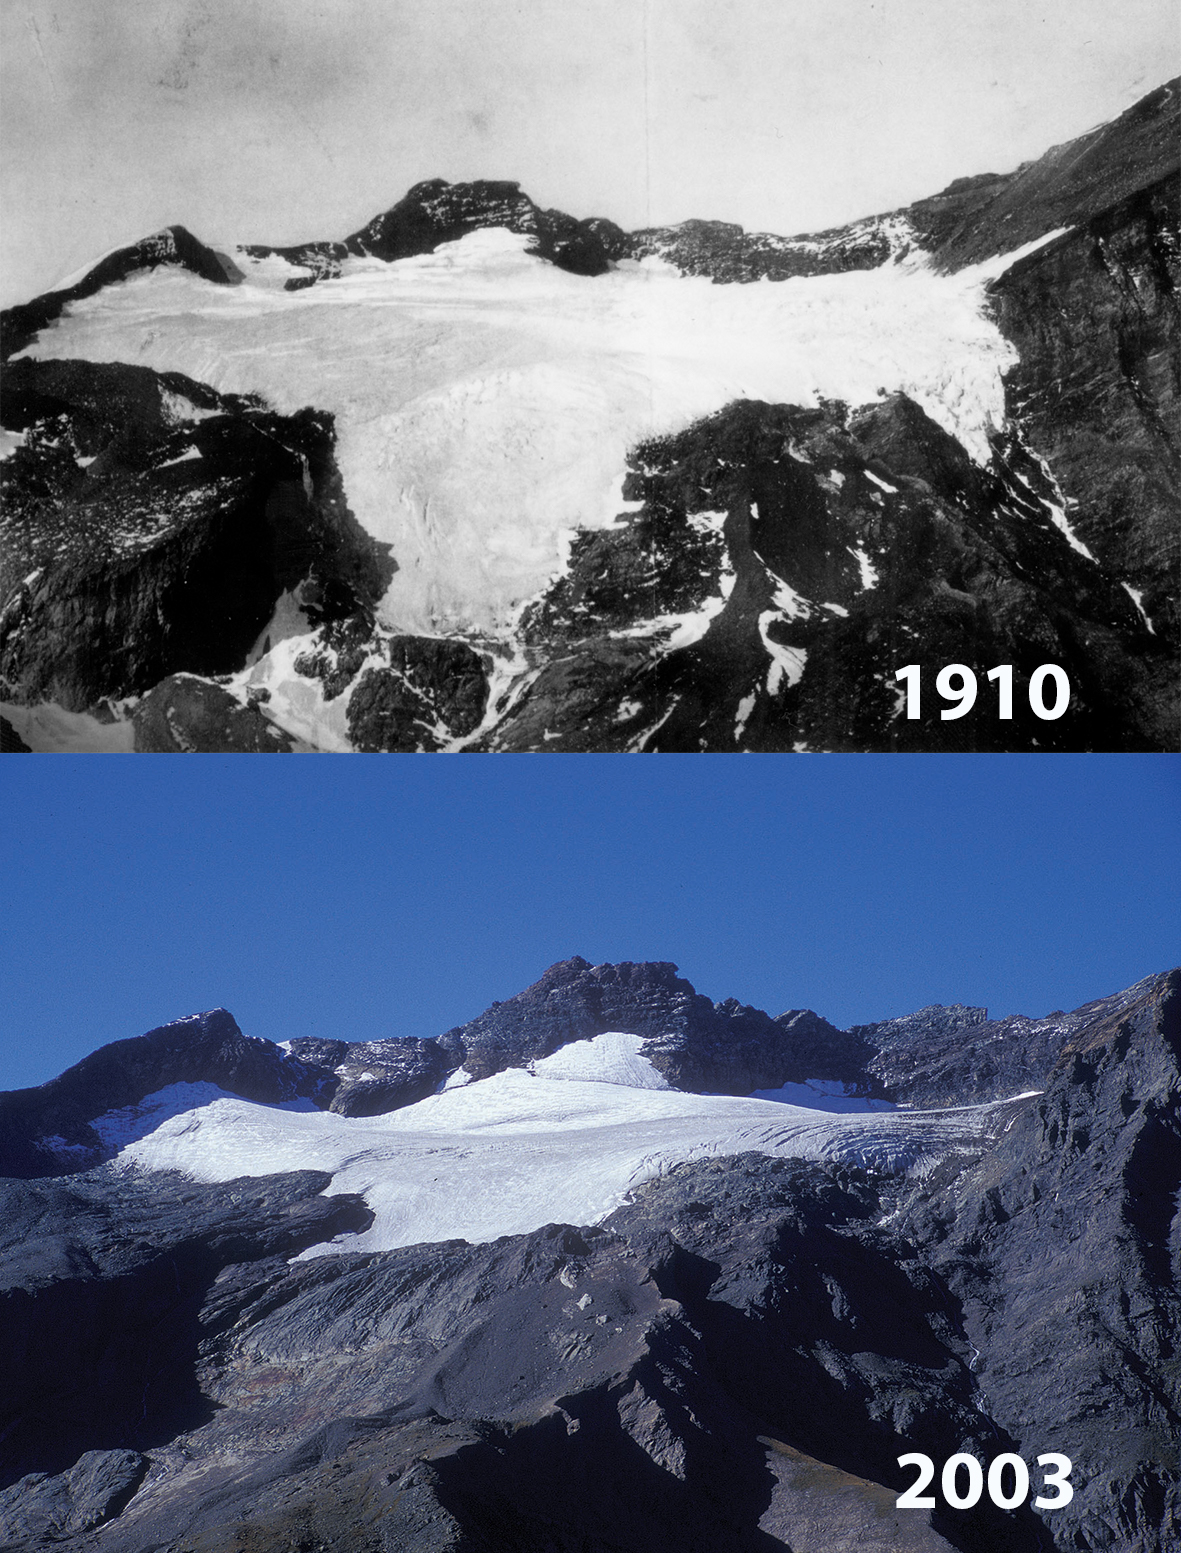 Glacier de Ciamarella: 1910 - 2003